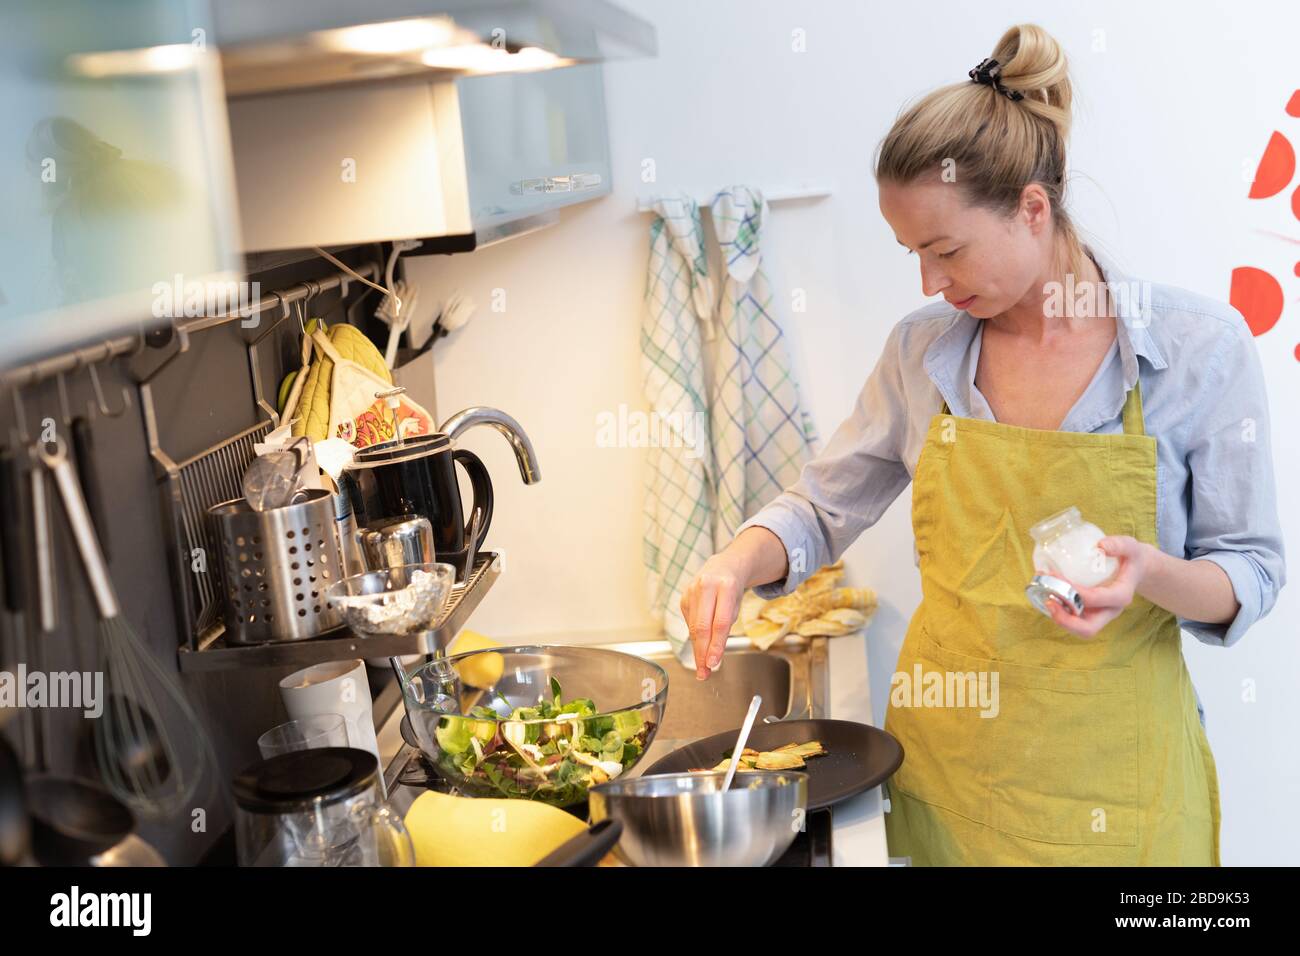 Estancia en casa ama de casa mujer cocinar en la cocina, salando el plato en una cacerola, preparando la comida para la cena familiar. Foto de stock